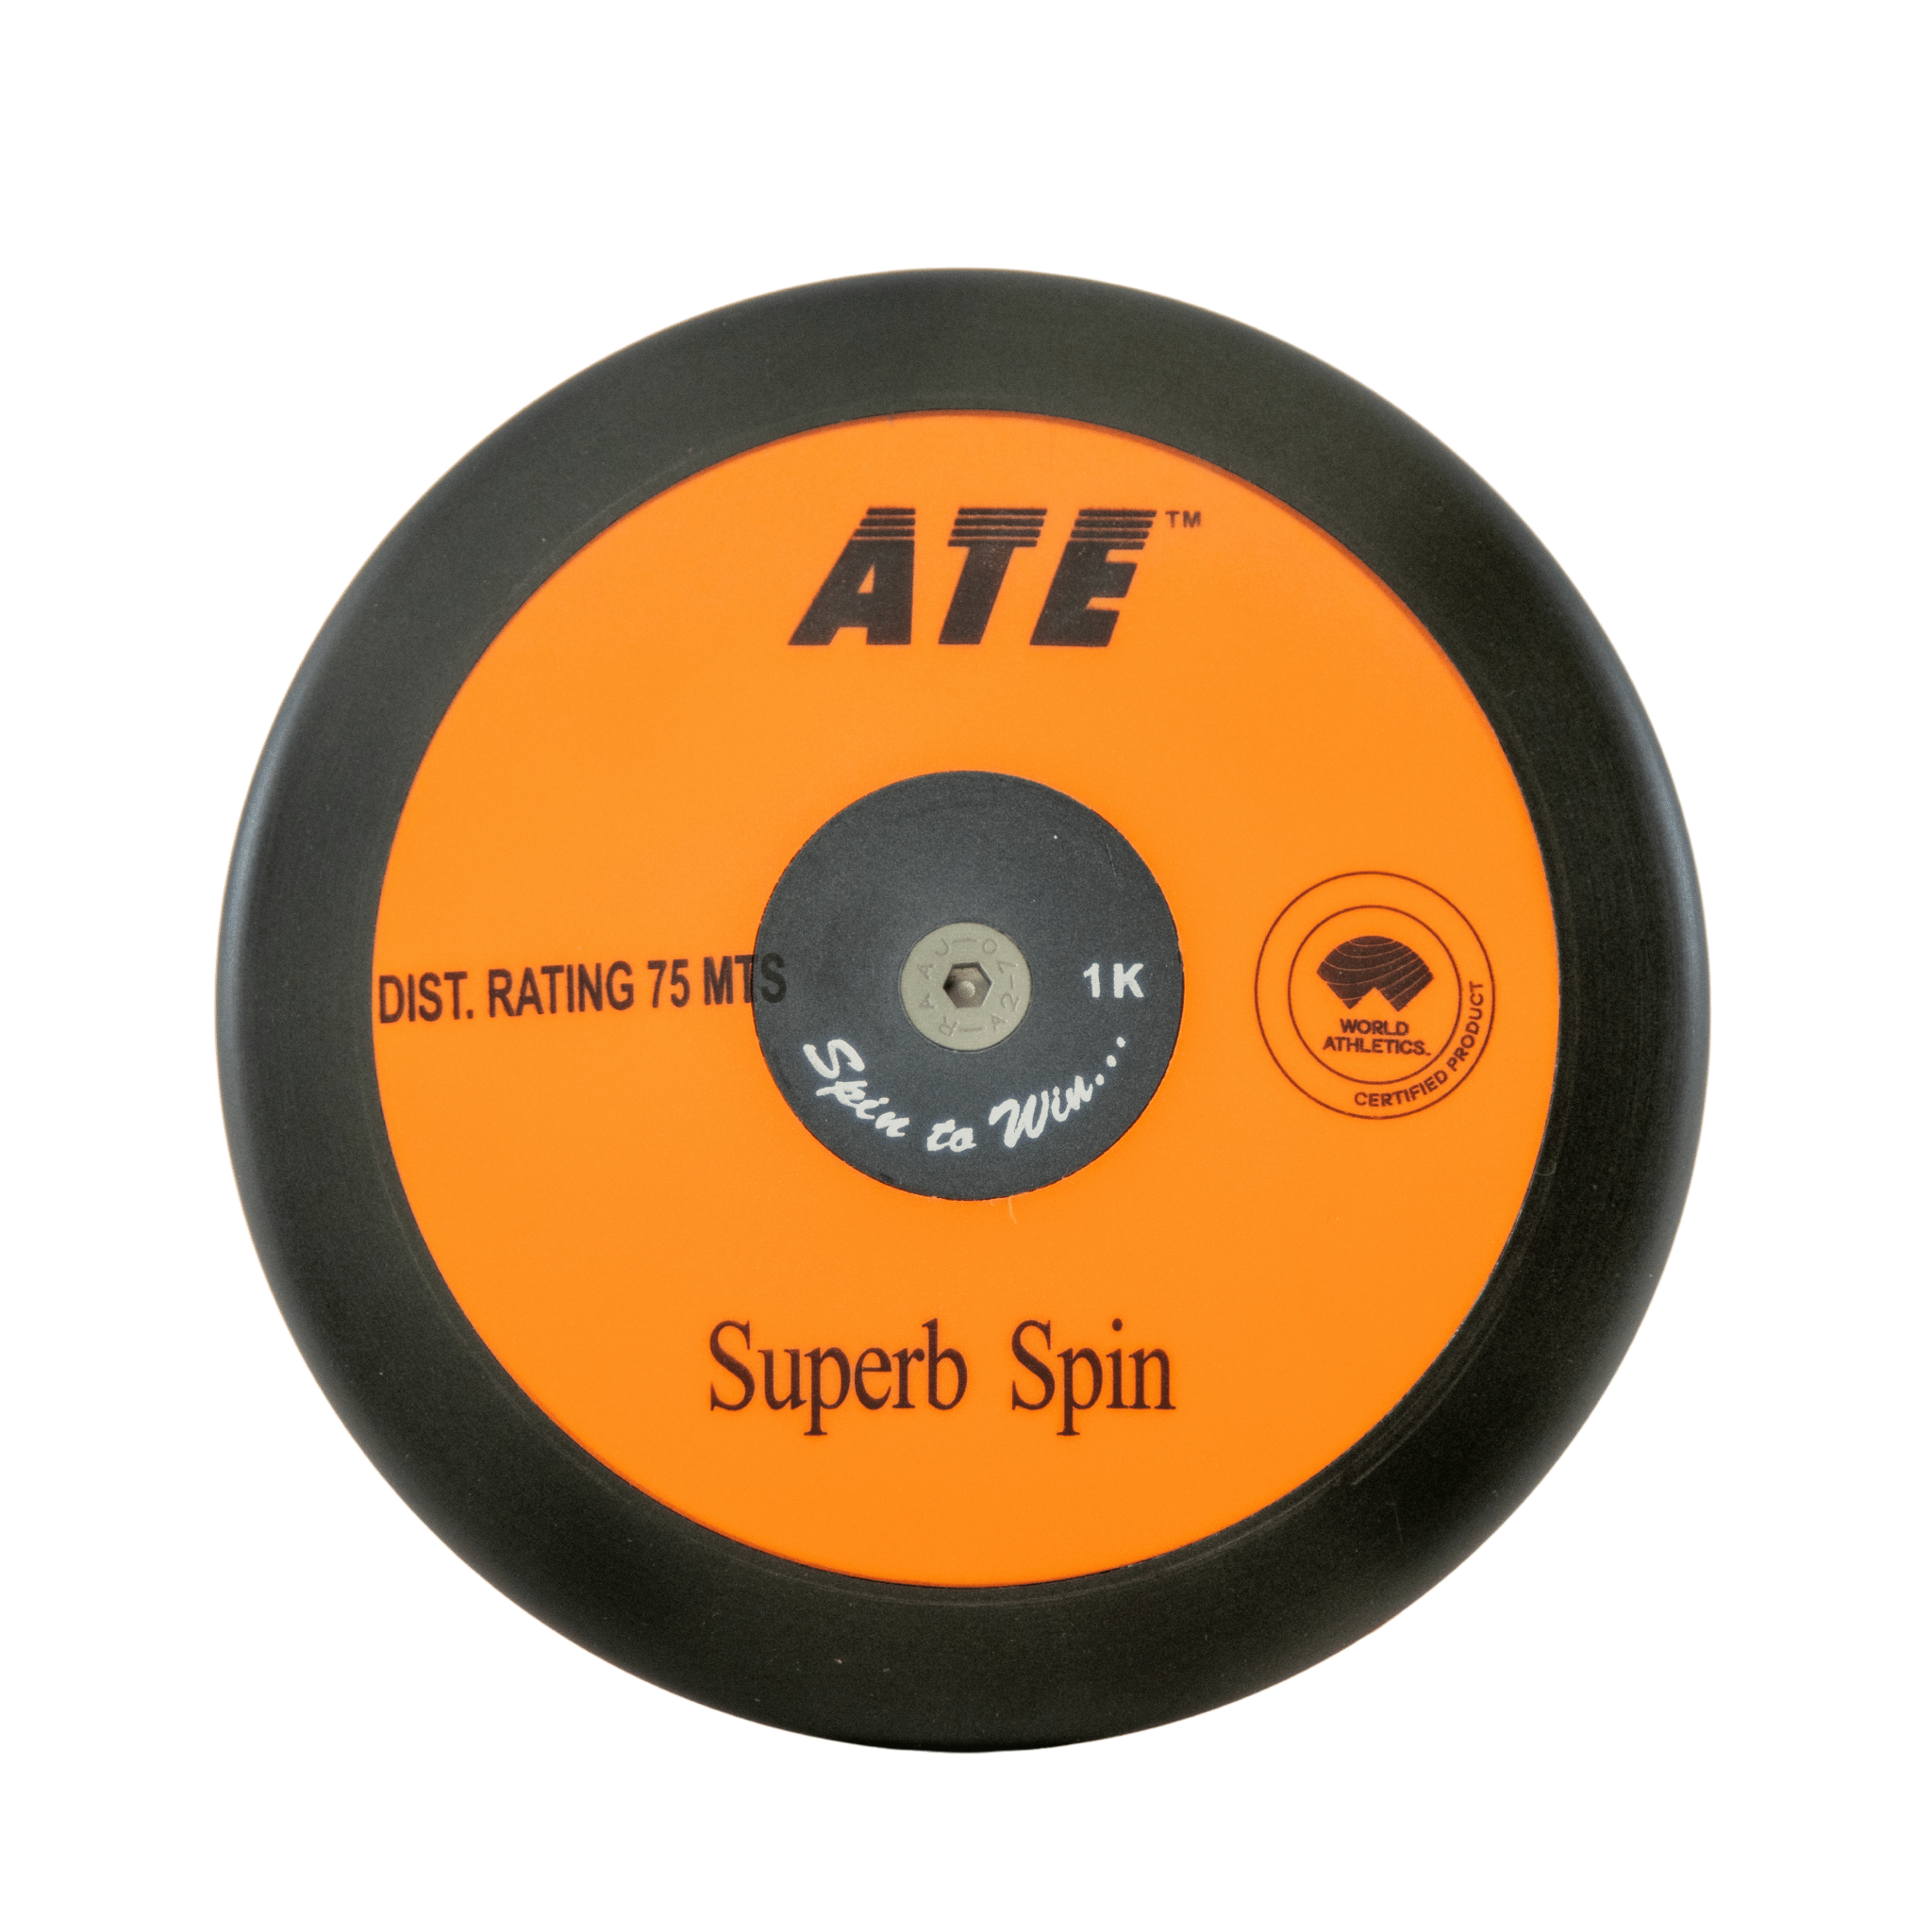 ATE Superb Spin Discus | Orange & Black | 1kg | Throw Equipment